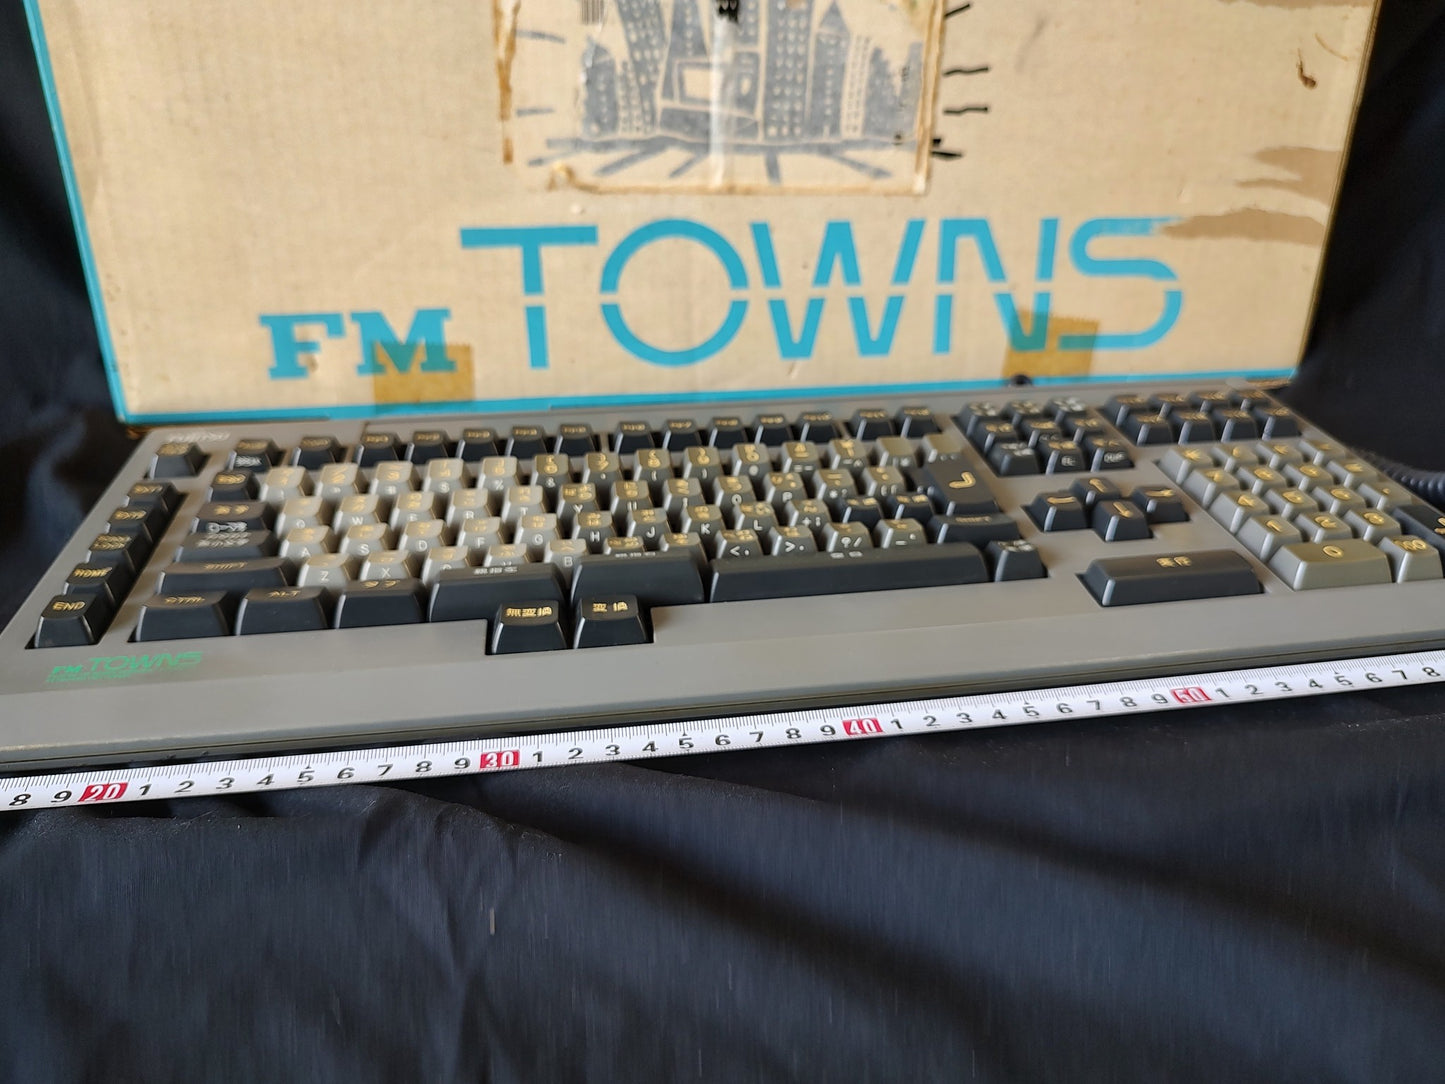 FUJITSU FM Towns /MARTY Original KEYBOARD FMT-KB207 Boxed ,Working-g0419-